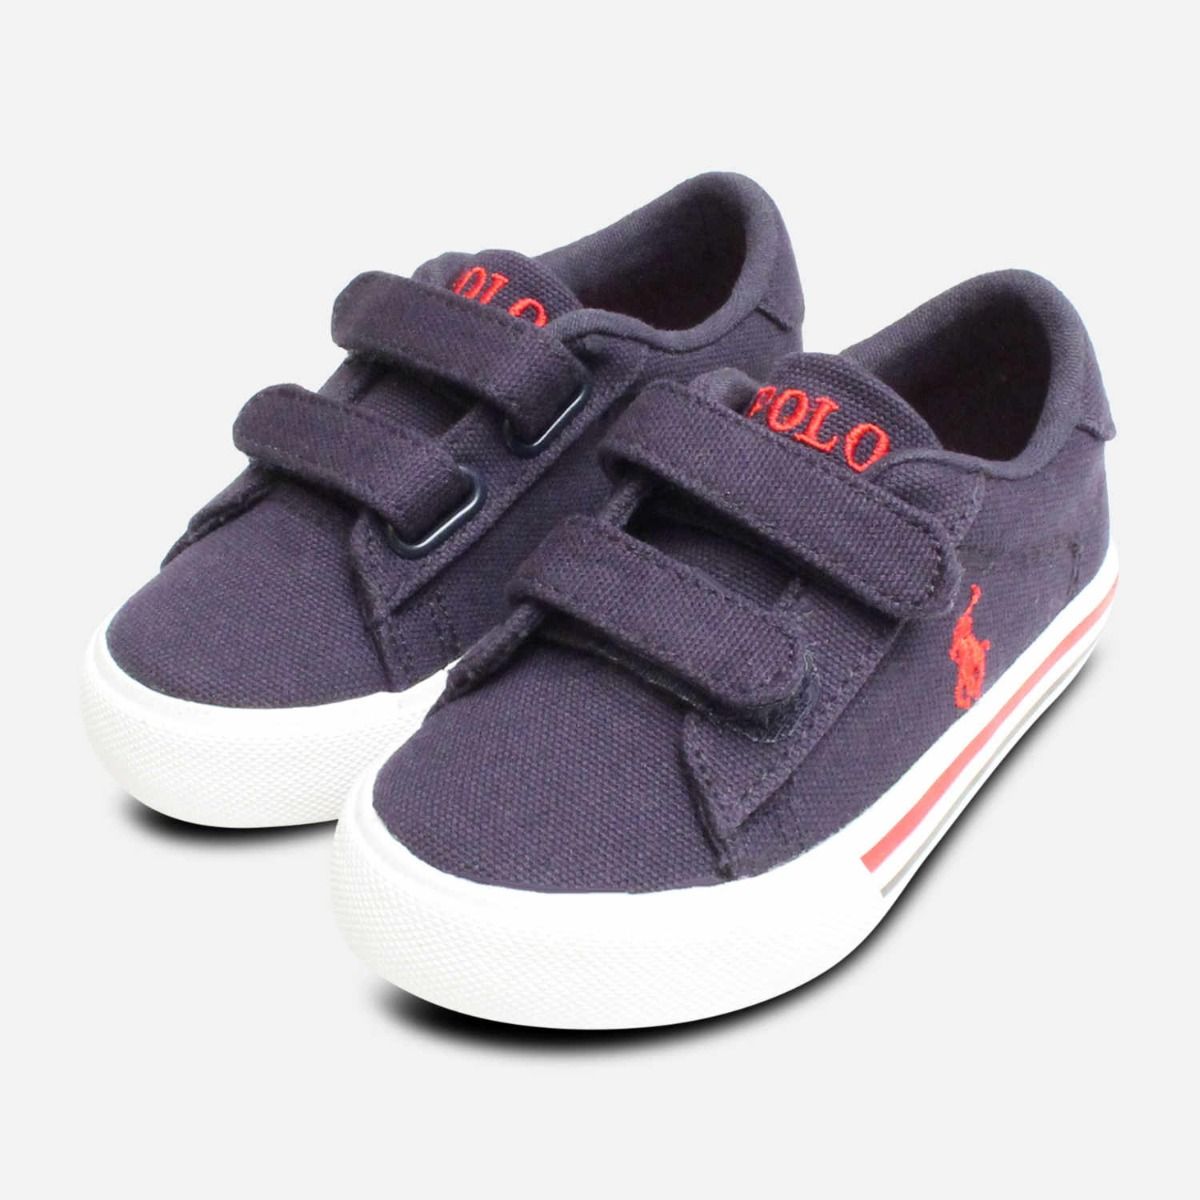 Polo Blue Canvas Sneakers - Boys 12